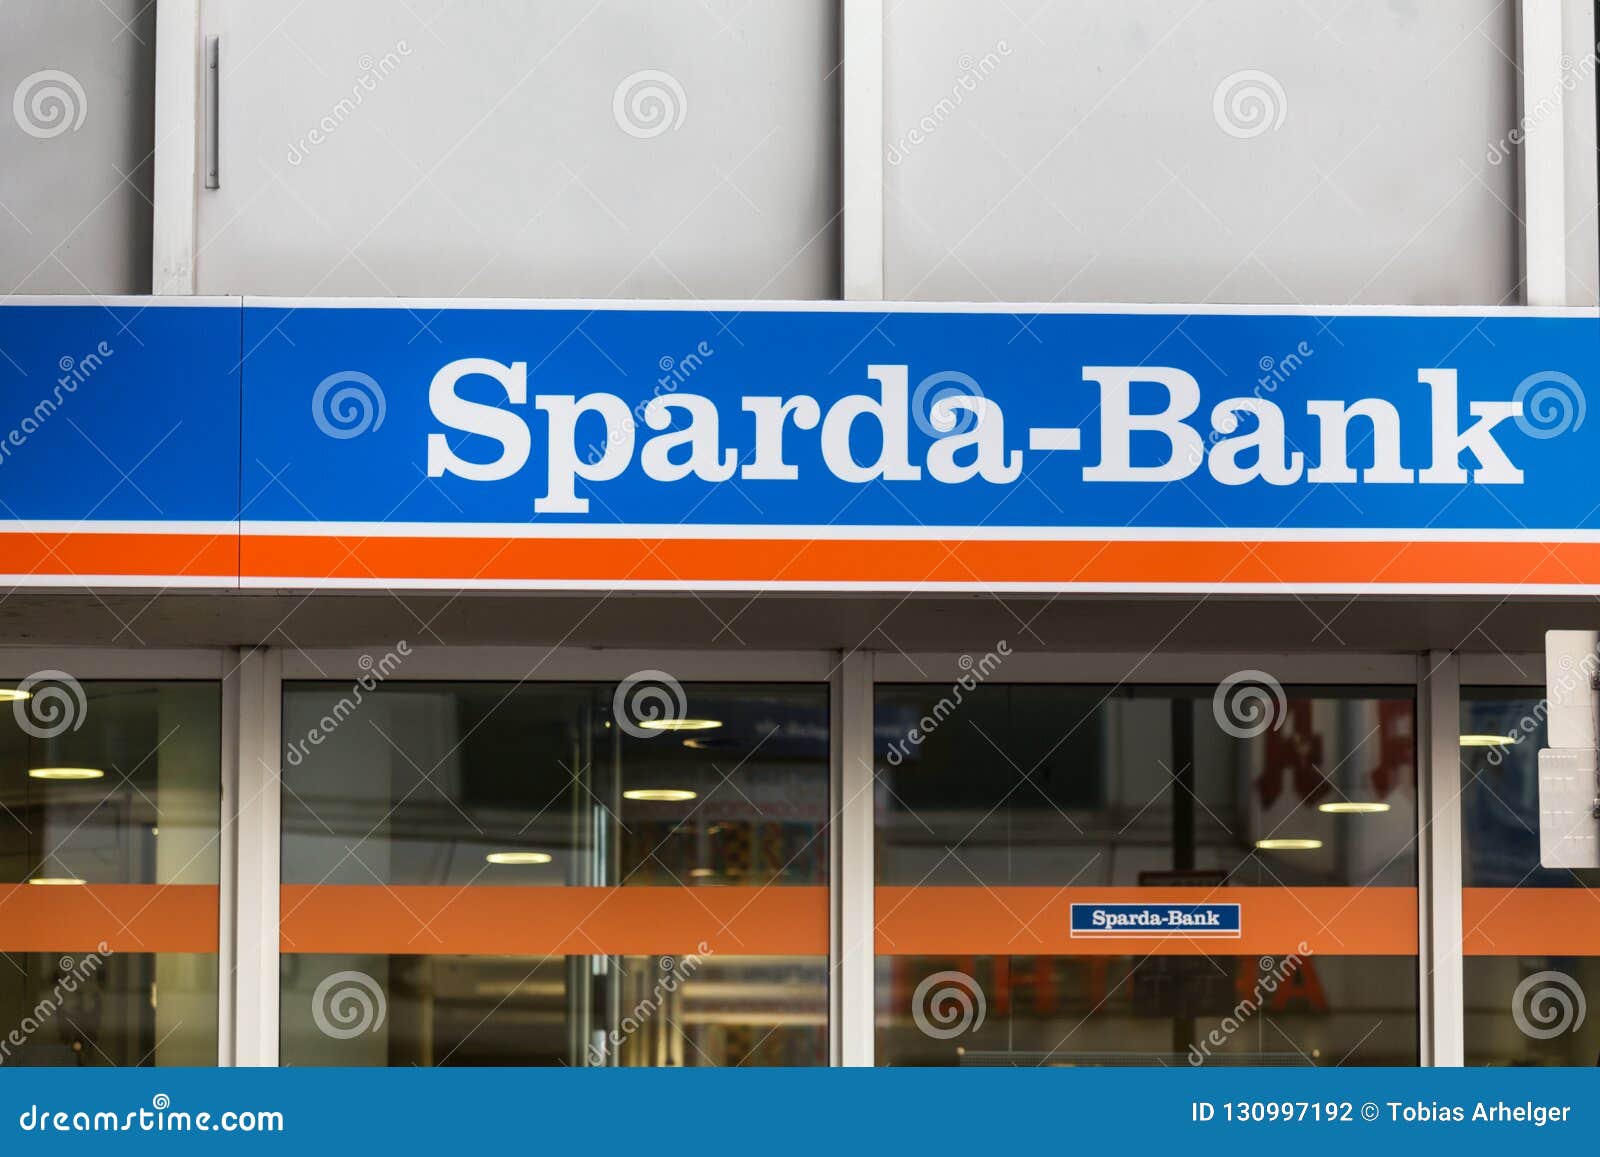 Sparda Bank Augsburg Herzlich Willkommen